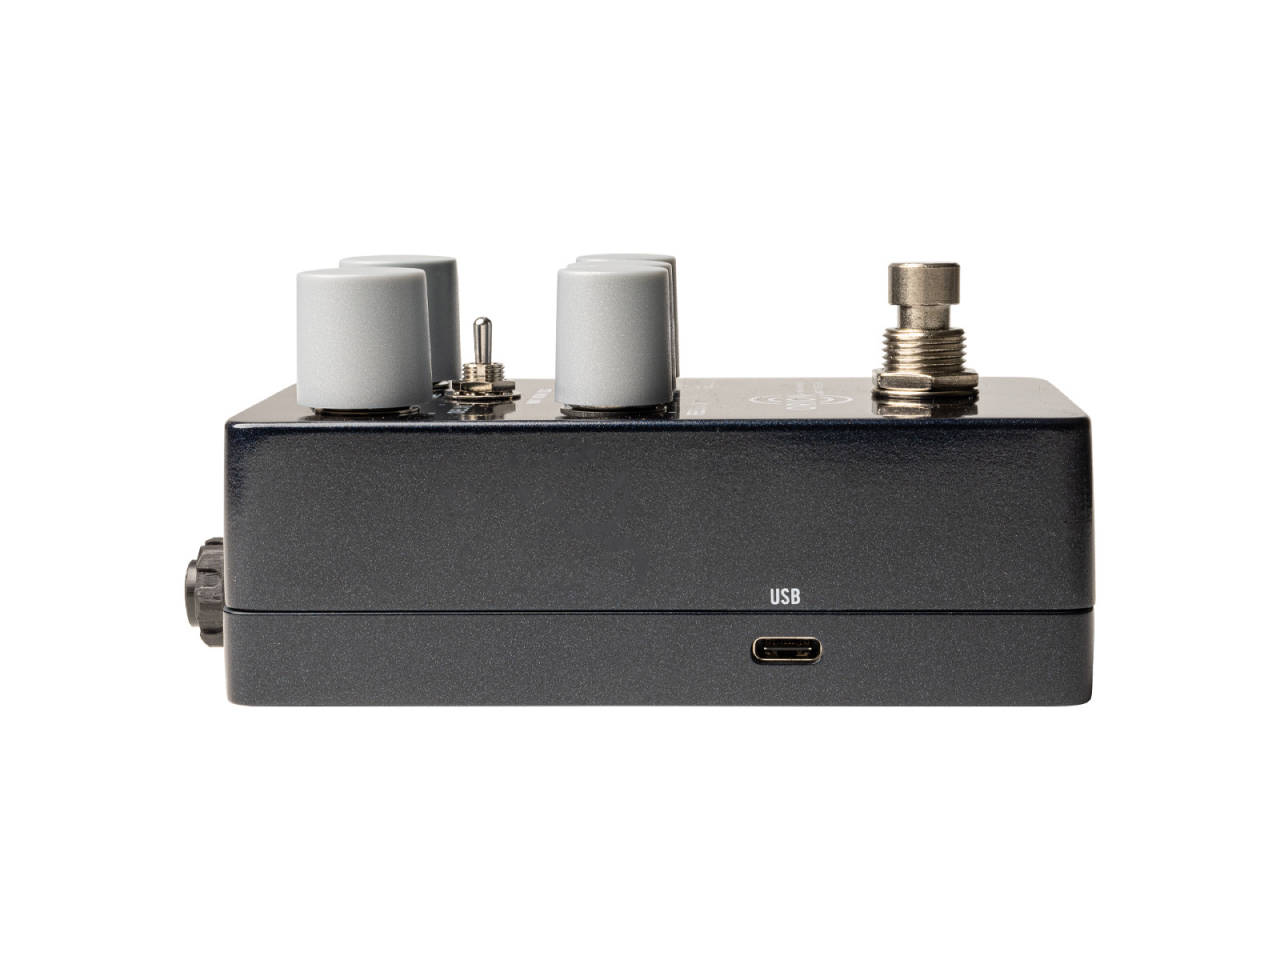 【期間・数量限定 | プロモーション特別価格】Universal Audio UAFX Orion Tape Echo (ディレイ)